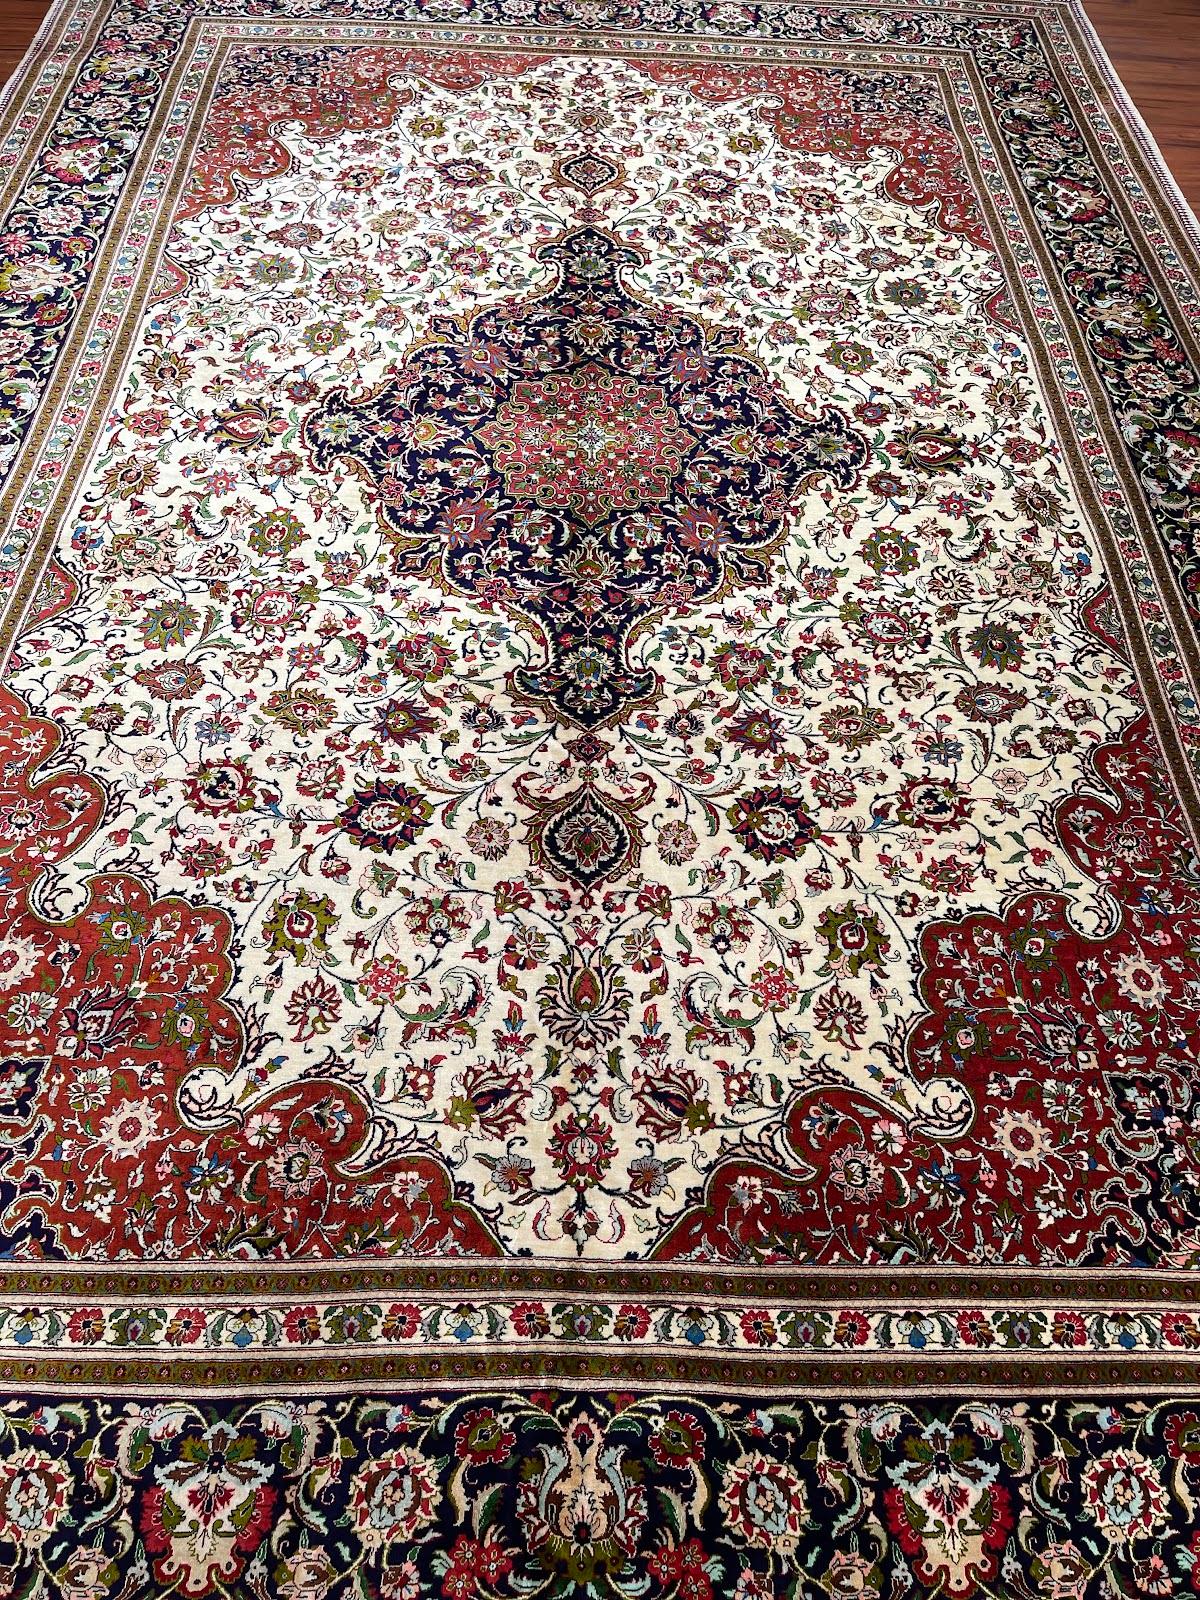 Il s'agit d'un tapis en soie perse Qum originaire d'Iran. Le matériau est 100% soie. Les dimensions sont de 8'0 